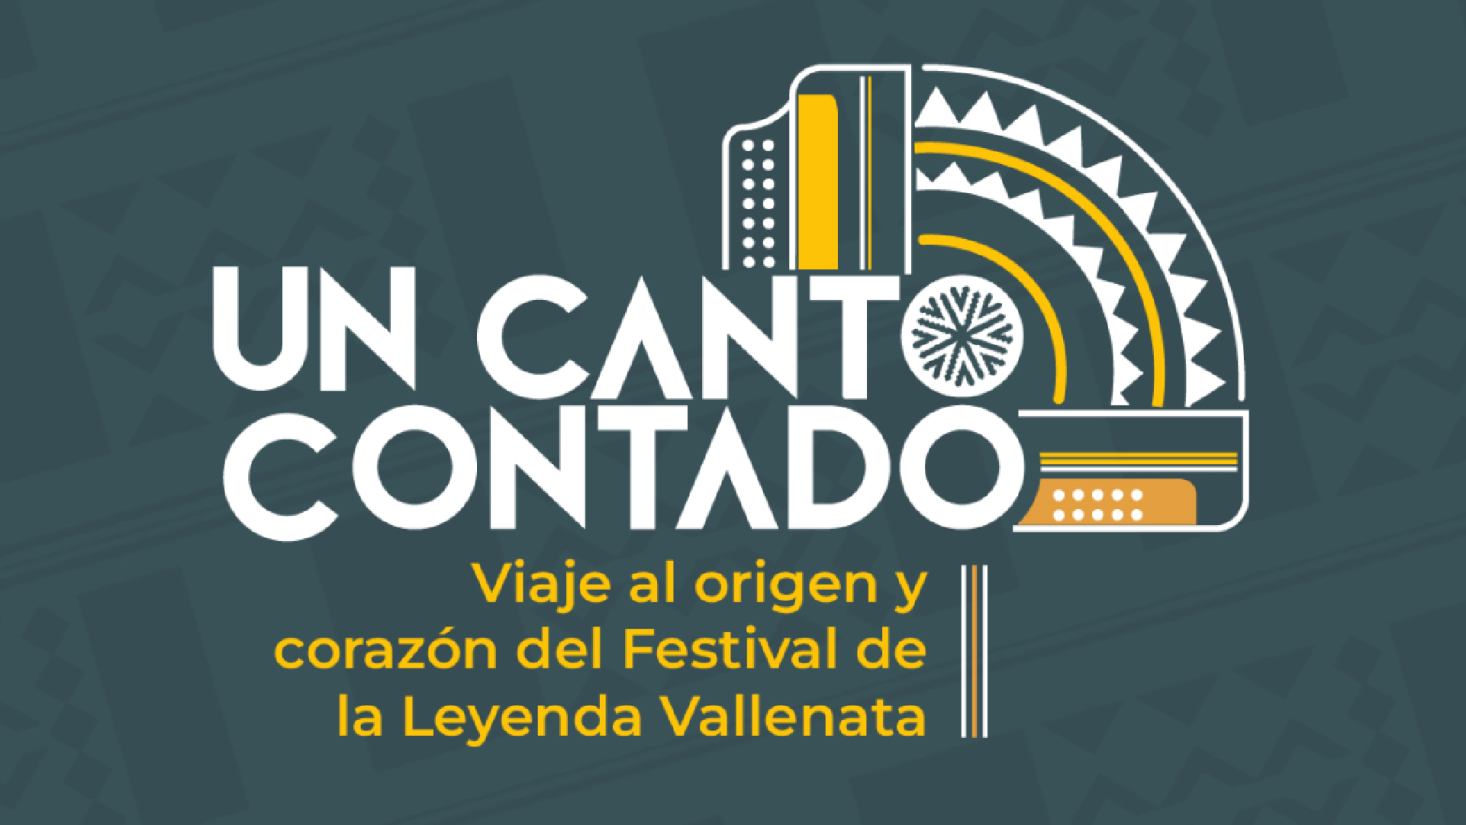 vallenato-un-canto-contado-viaje-al-origen-y-corazon-del-festival-de-la-leyenda-vallenata